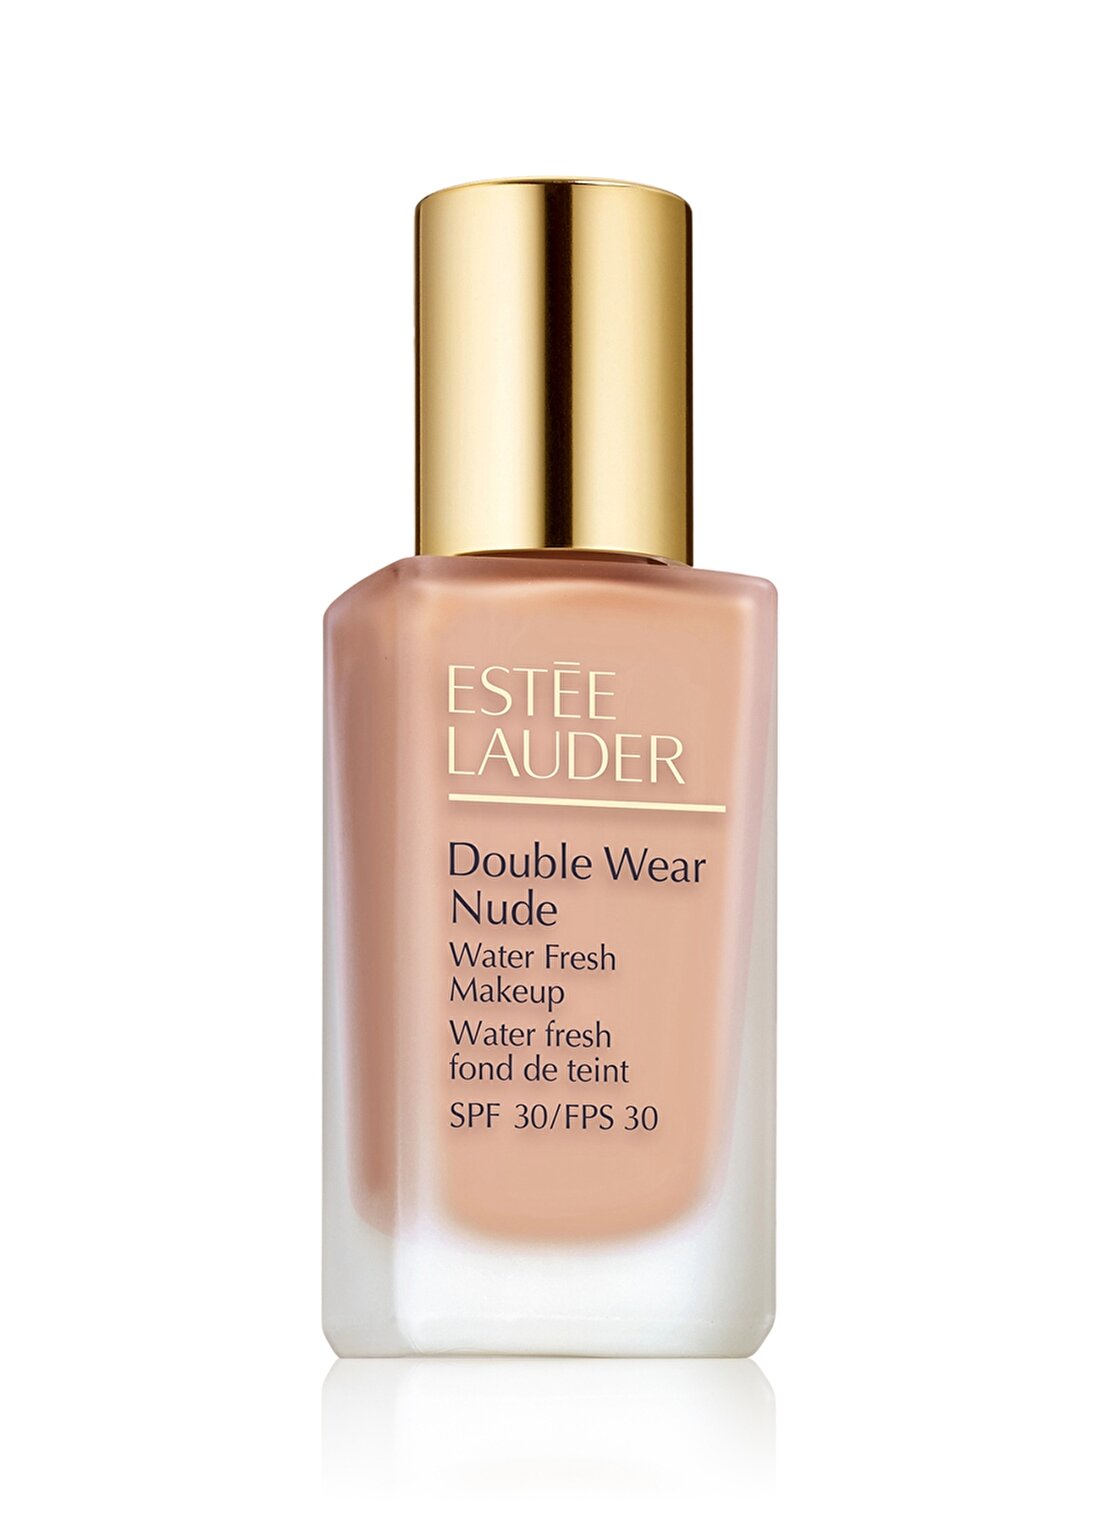 Estee Lauder Double Wear Nude 2C2 Pale Almond Fondöten